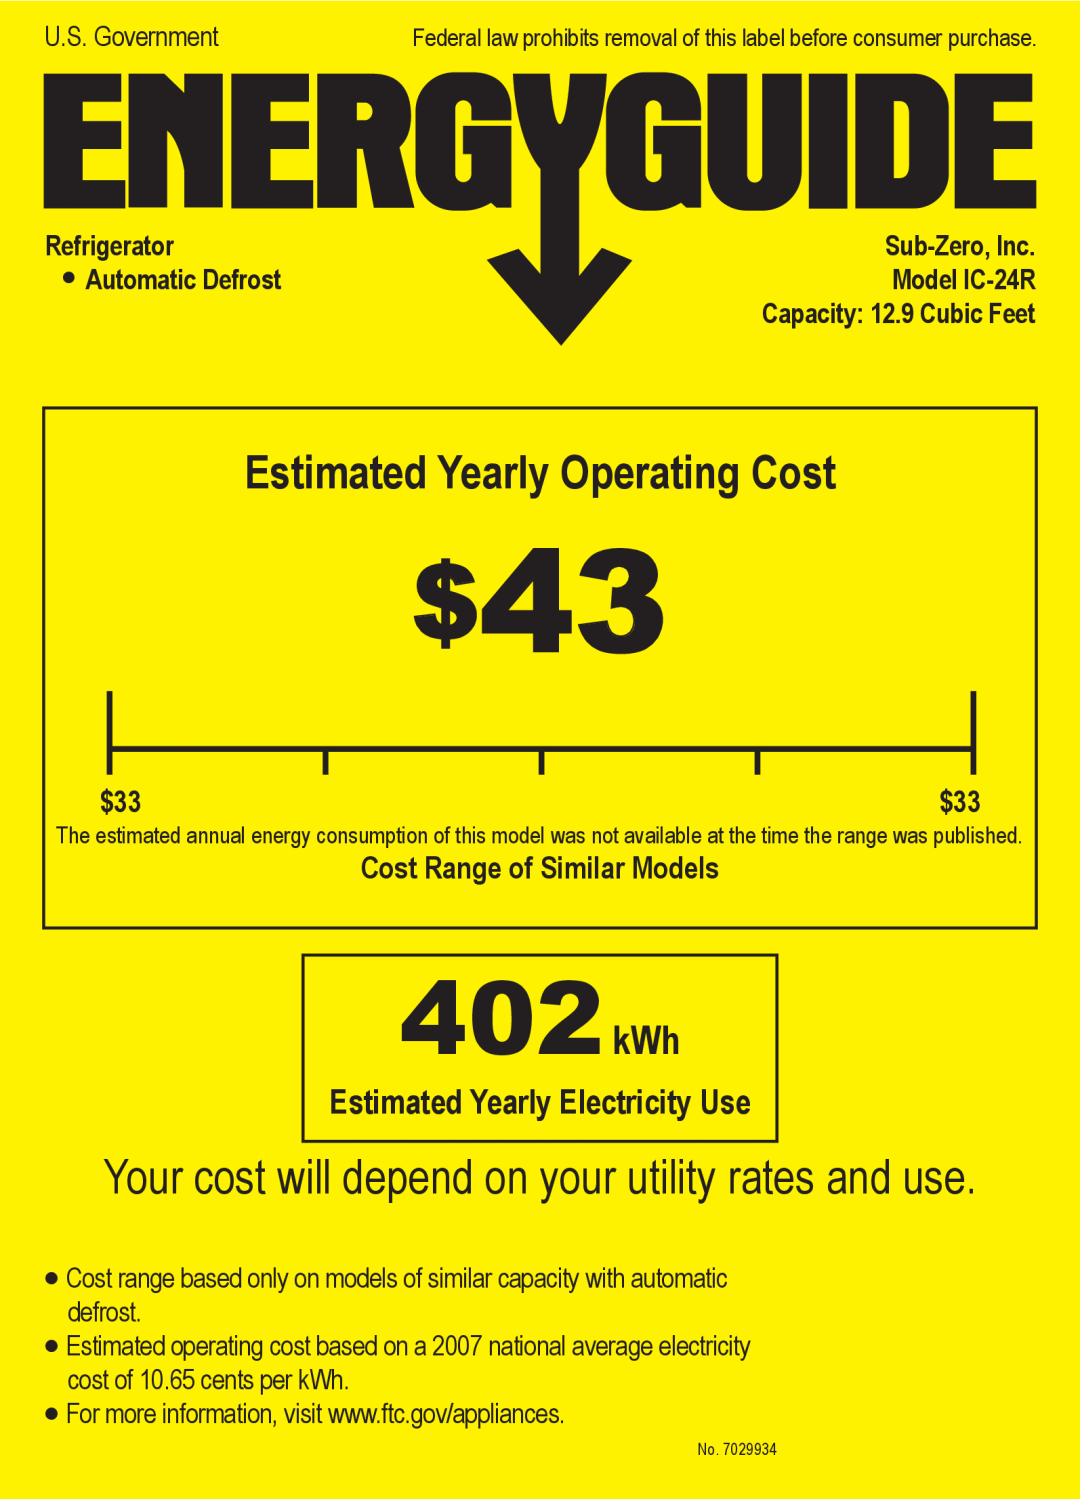 Sub-Zero IC-24R manual Estimated Yearly Electricity Use, Cost Range of Similar Models, 402kWh, Refrigerator, Sub-Zero,Inc 